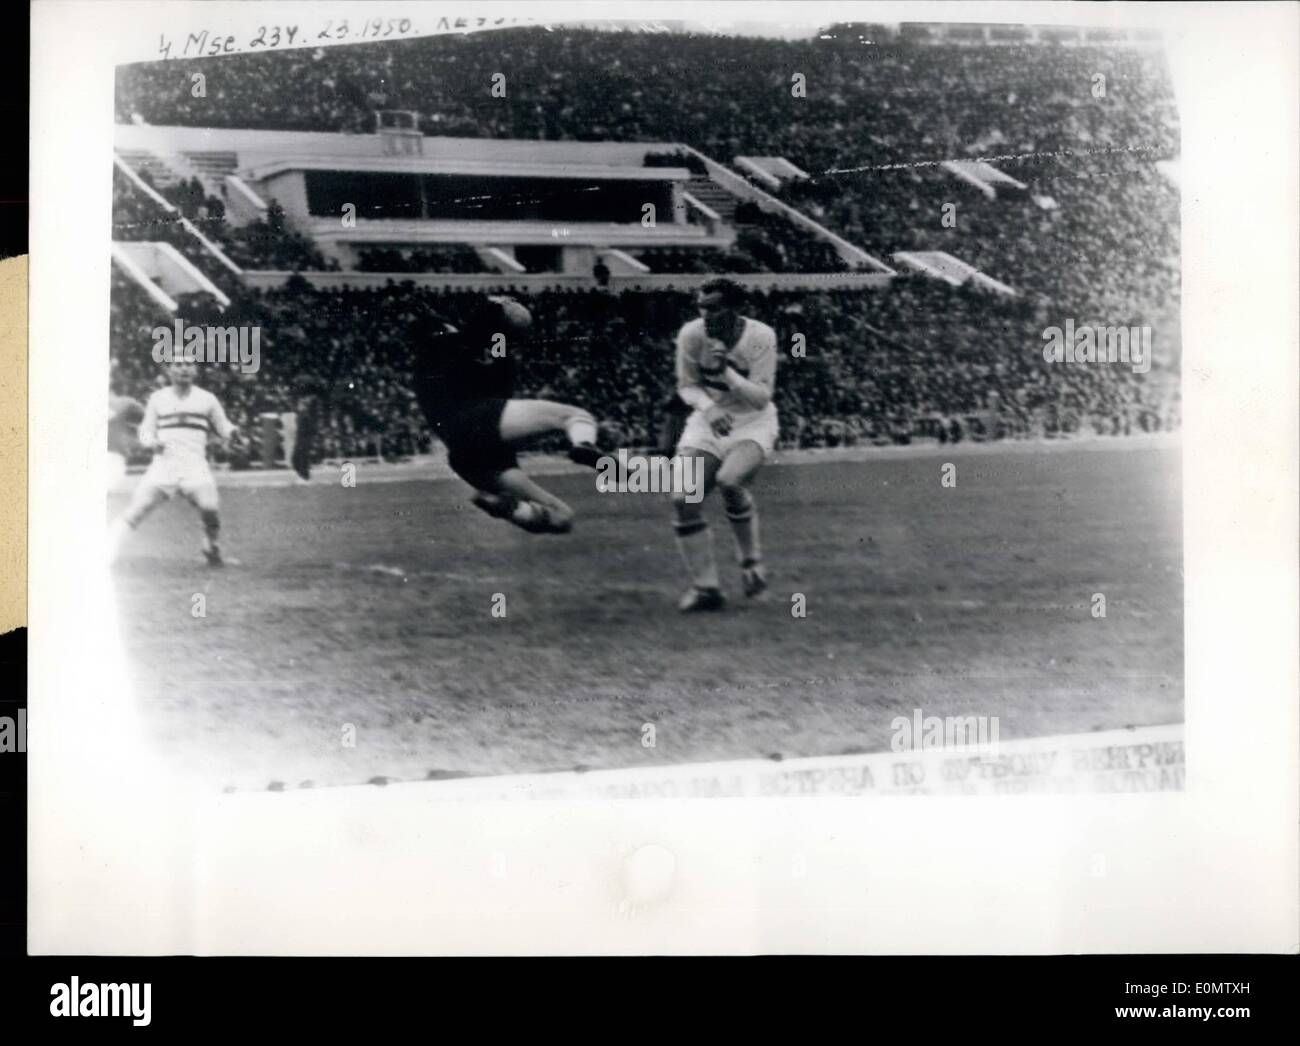 Sept. 09, 1956 - ungarischen Fußball Mannschaft gewinnt in Moskau. Fußball-Nationalmannschaft Ungarns ist es gelungen, mit einem unerwarteten 1:0-Punktestand Stockfoto